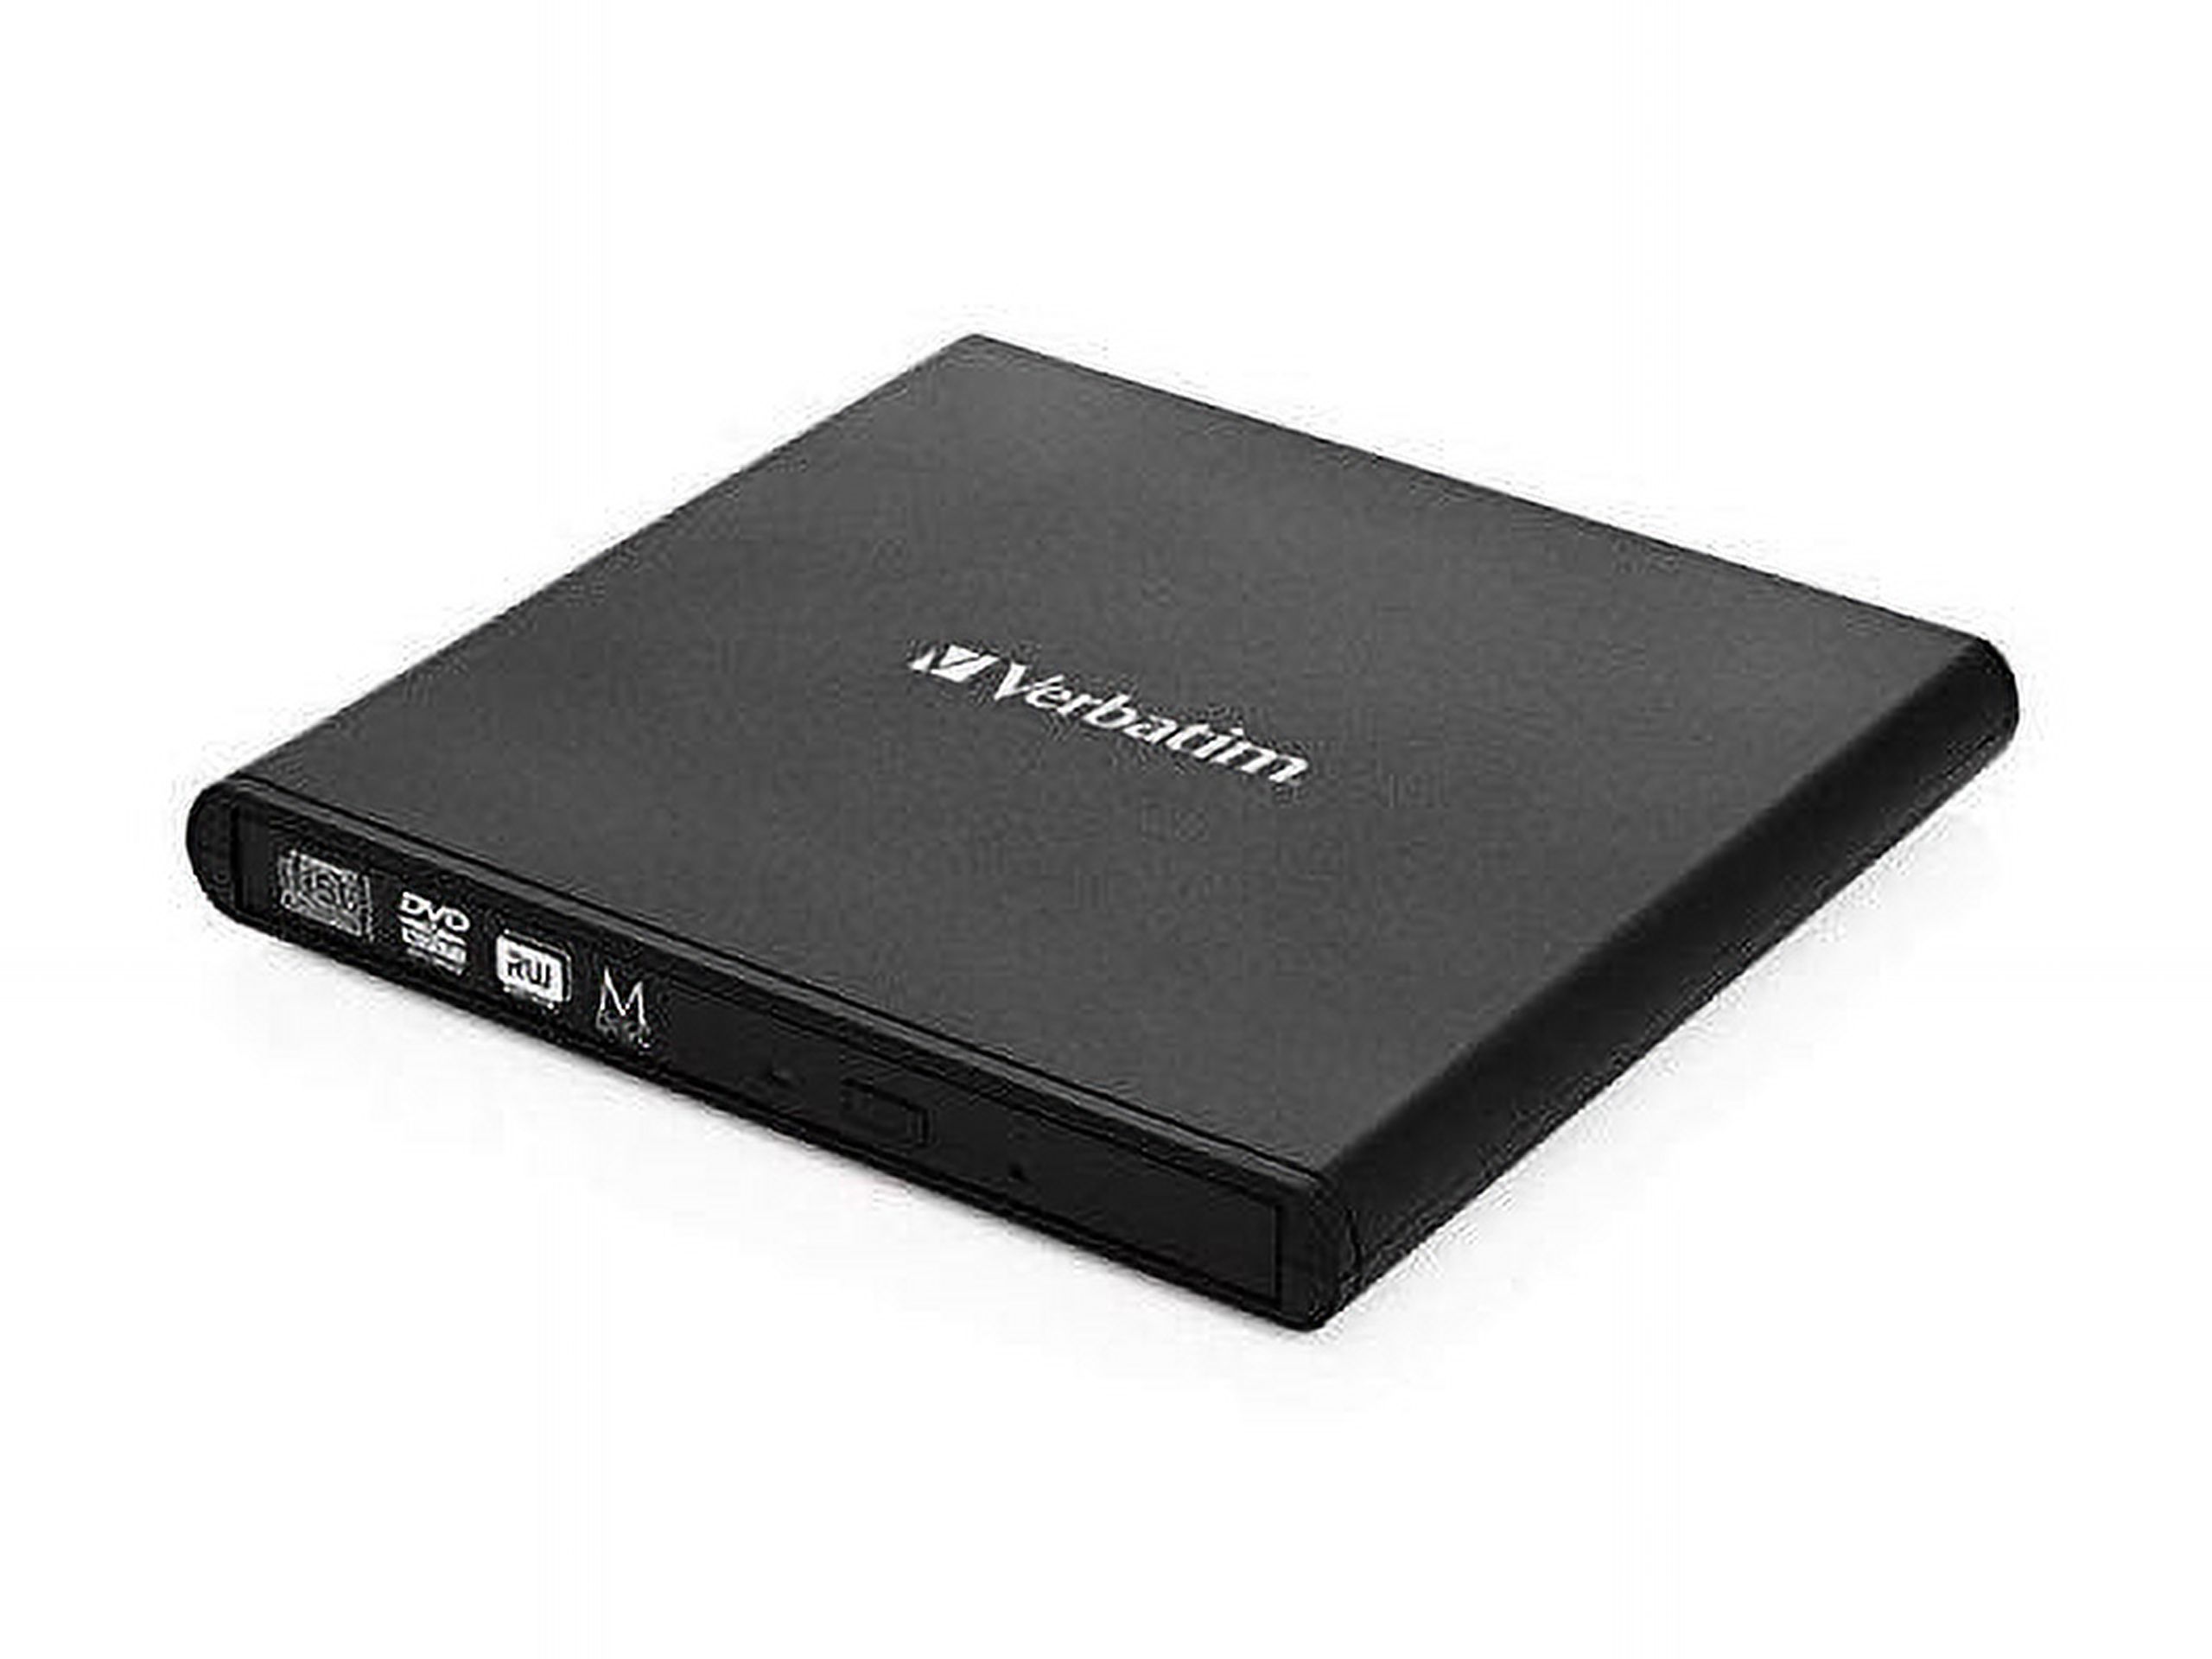 Verbatim USB External Slimline CD/DVD Writer Model 98938 - image 5 of 20